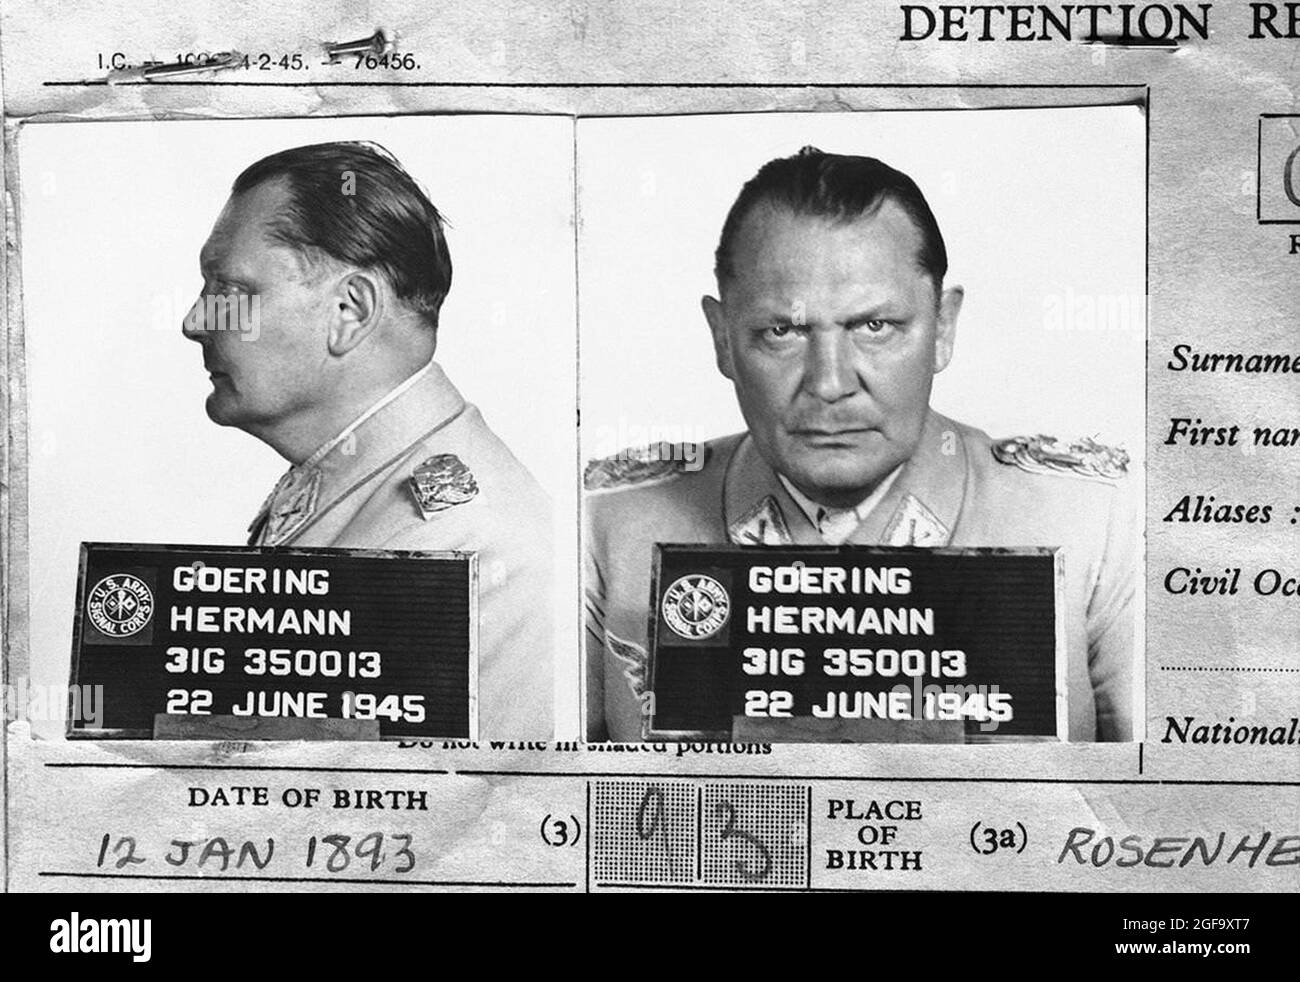 Il record di detenzione del 1945 il capo nazista della Luftwaffe Germann Göring, dopo essere stato catturato nel 1945, ha processato e condannato a morte a Norimberga nel 1946. Ha commesso ore di suicidio prima di essere impiccato. Foto Stock